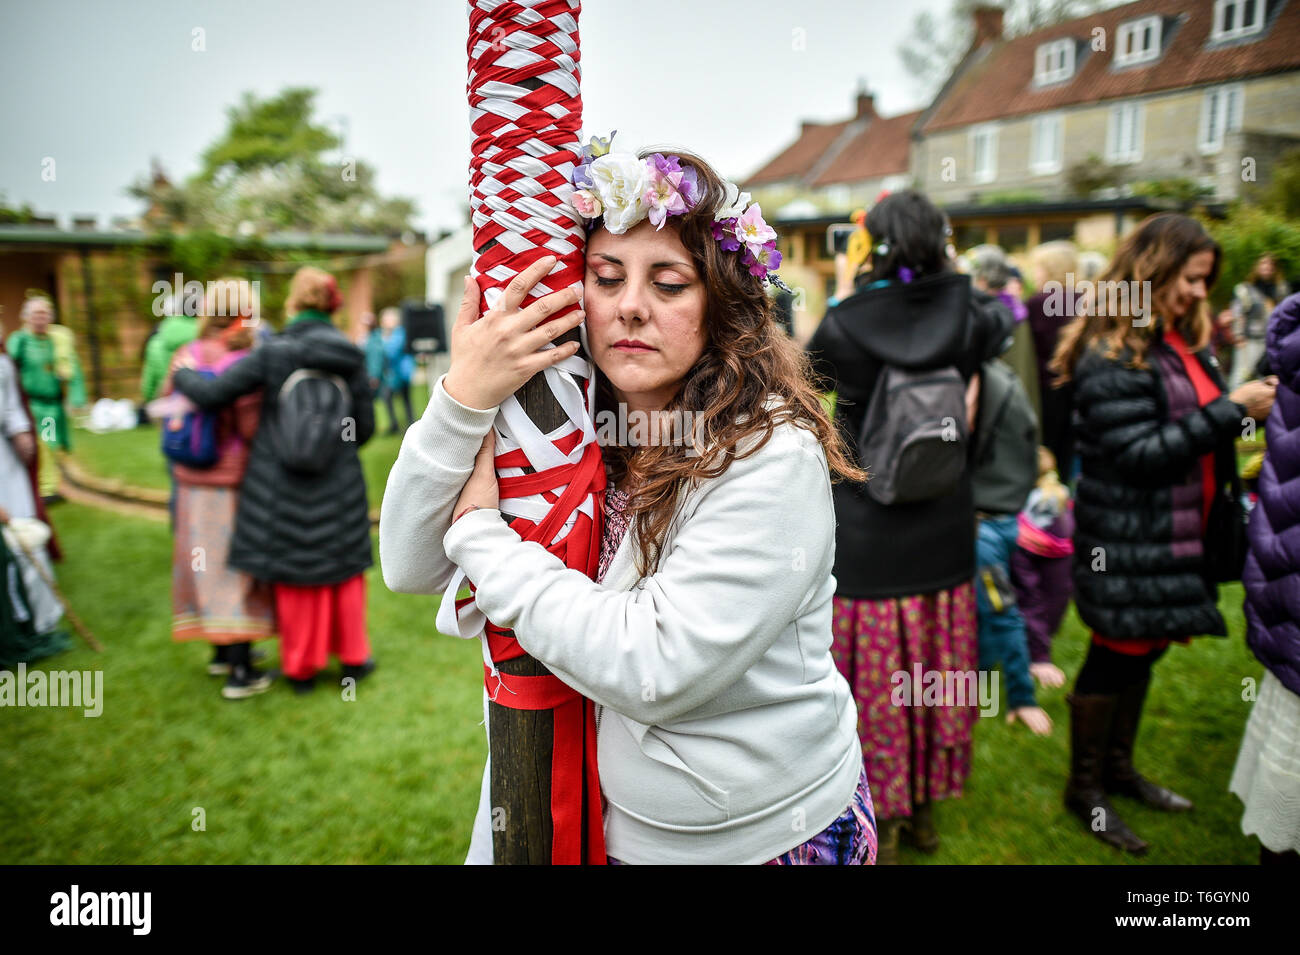 Eine Frau schweigend umarmt den Maibaum während der beltane Feiern an Glastonbury Kelch, wo Menschen zusammenkommen, eine moderne Interpretation des alten Keltischen heidnische Fruchtbarkeit Ritus der Feder zu beobachten. Stockfoto